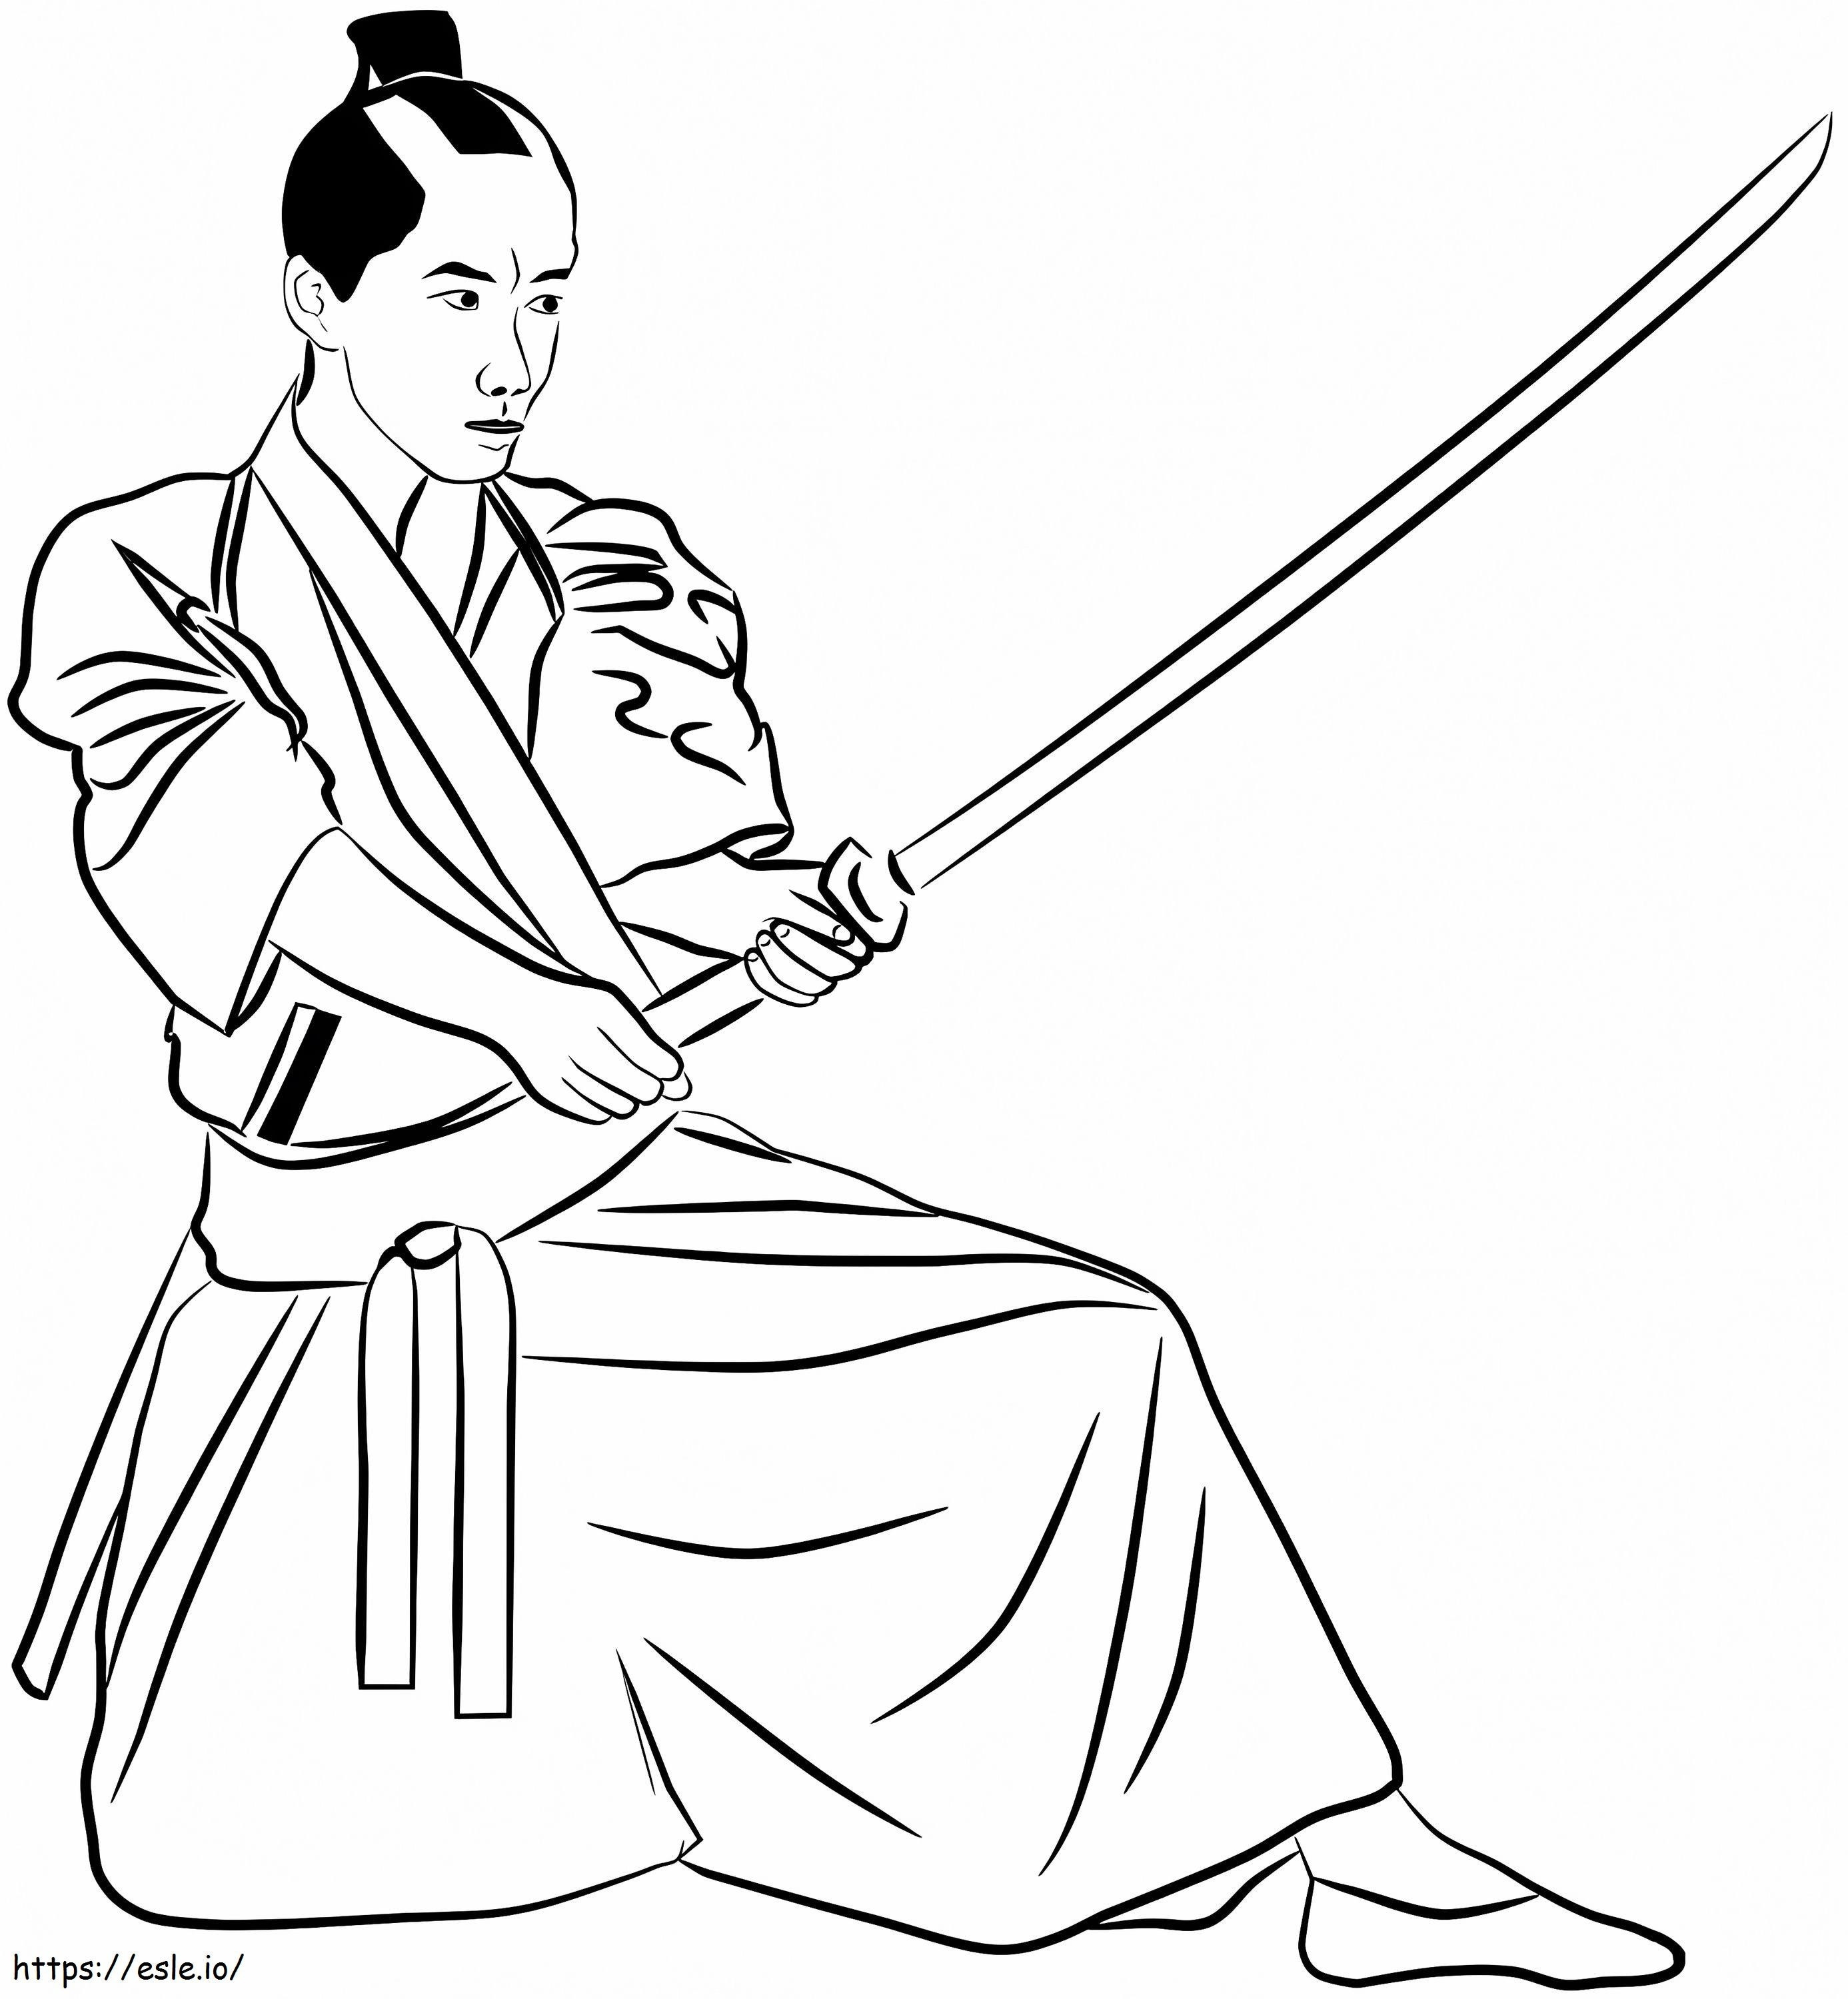 1562208666 Samurai A4 coloring page